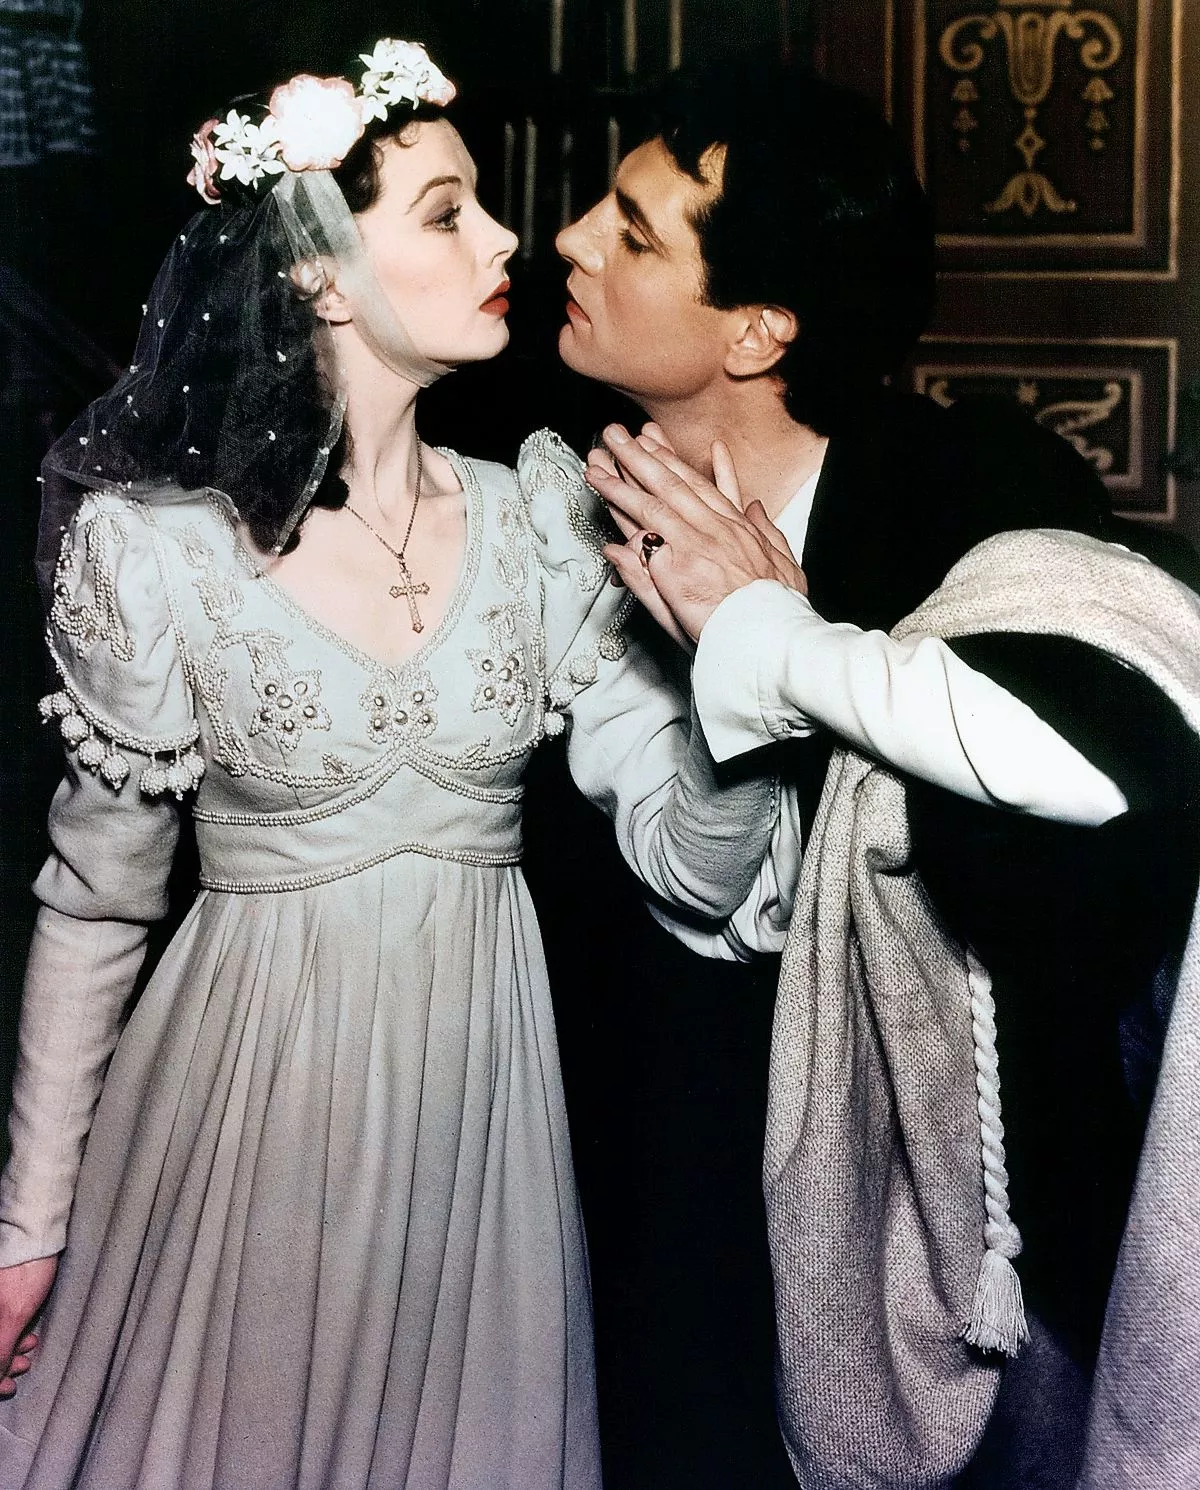 Вивьен Ли готовится поцеловать Лоуренса Оливье в спектакле «Ромео и Джульетта»